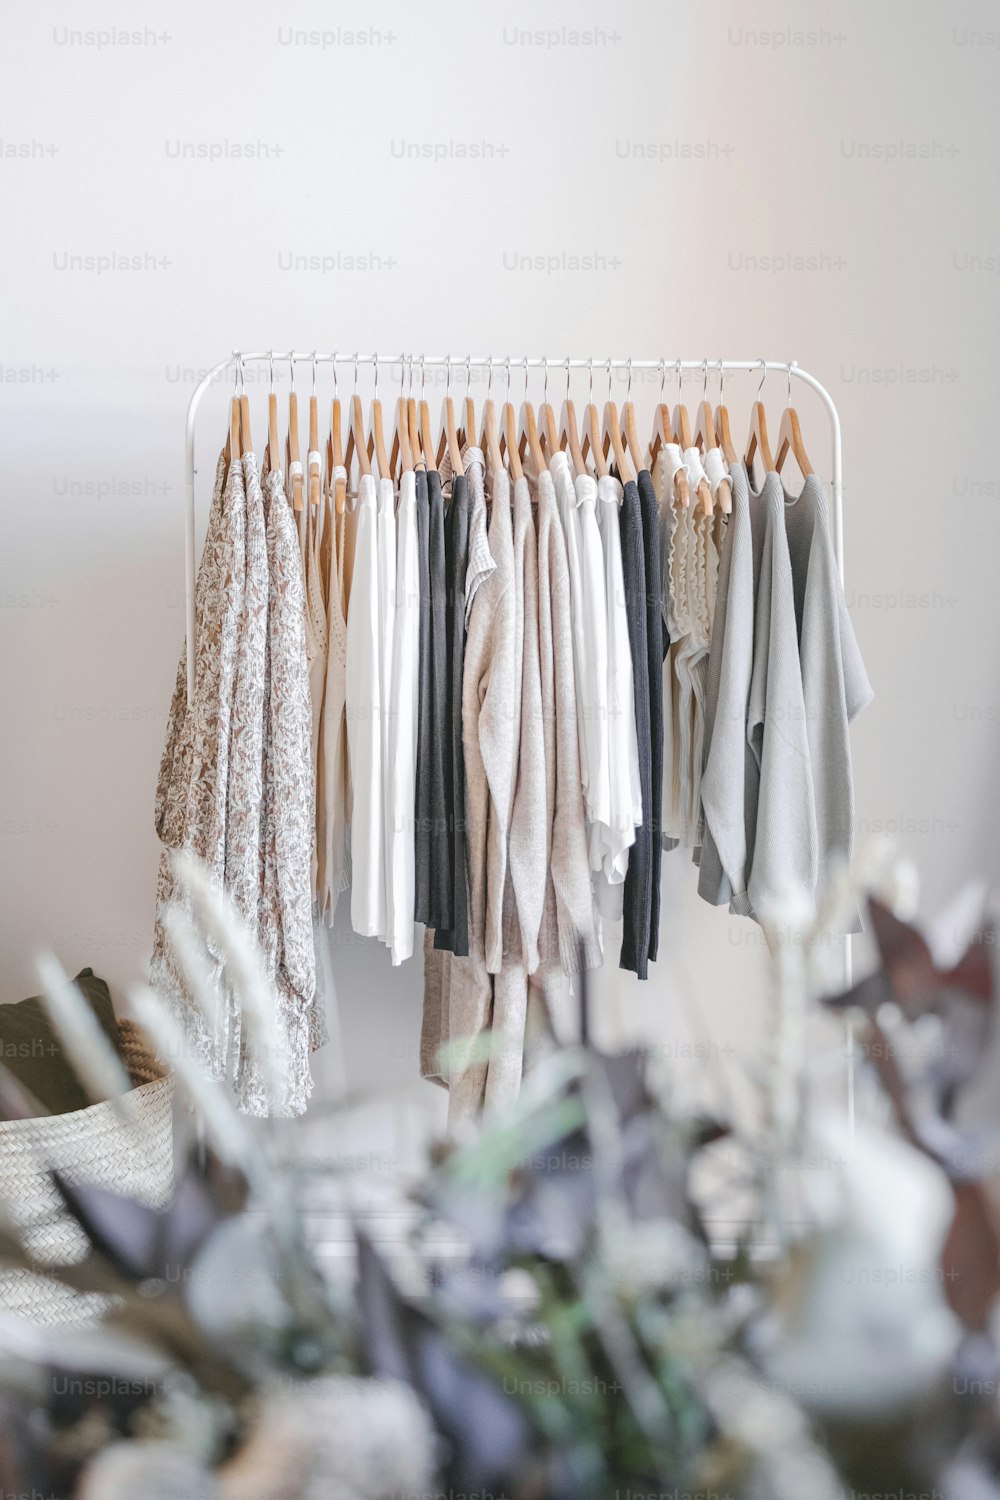 Un porte-vêtements accroché à une corde à linge photo – Shopping